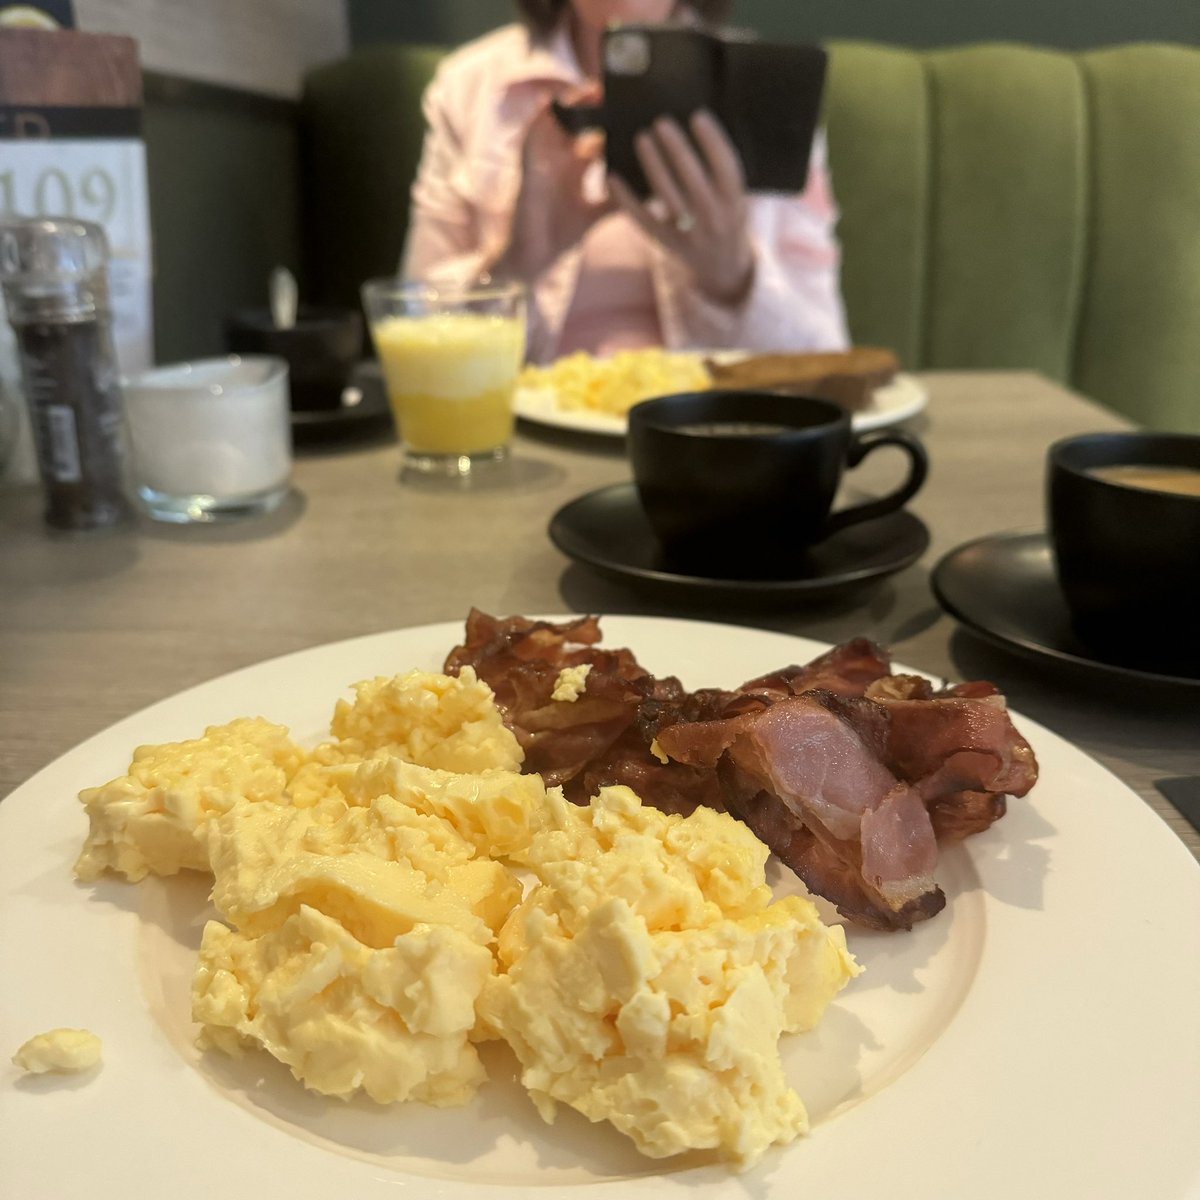 #hotelontbijtje...
Mét Elma! 😊

#myview #hotel #HotelLandgoedZonheuvel #hotelDoorn #Doorn
. 
#food #foodporn #foodgasm #foodphotography #breakfast #breakfasttime #coffee #eggs #scrambledeggs #bacon